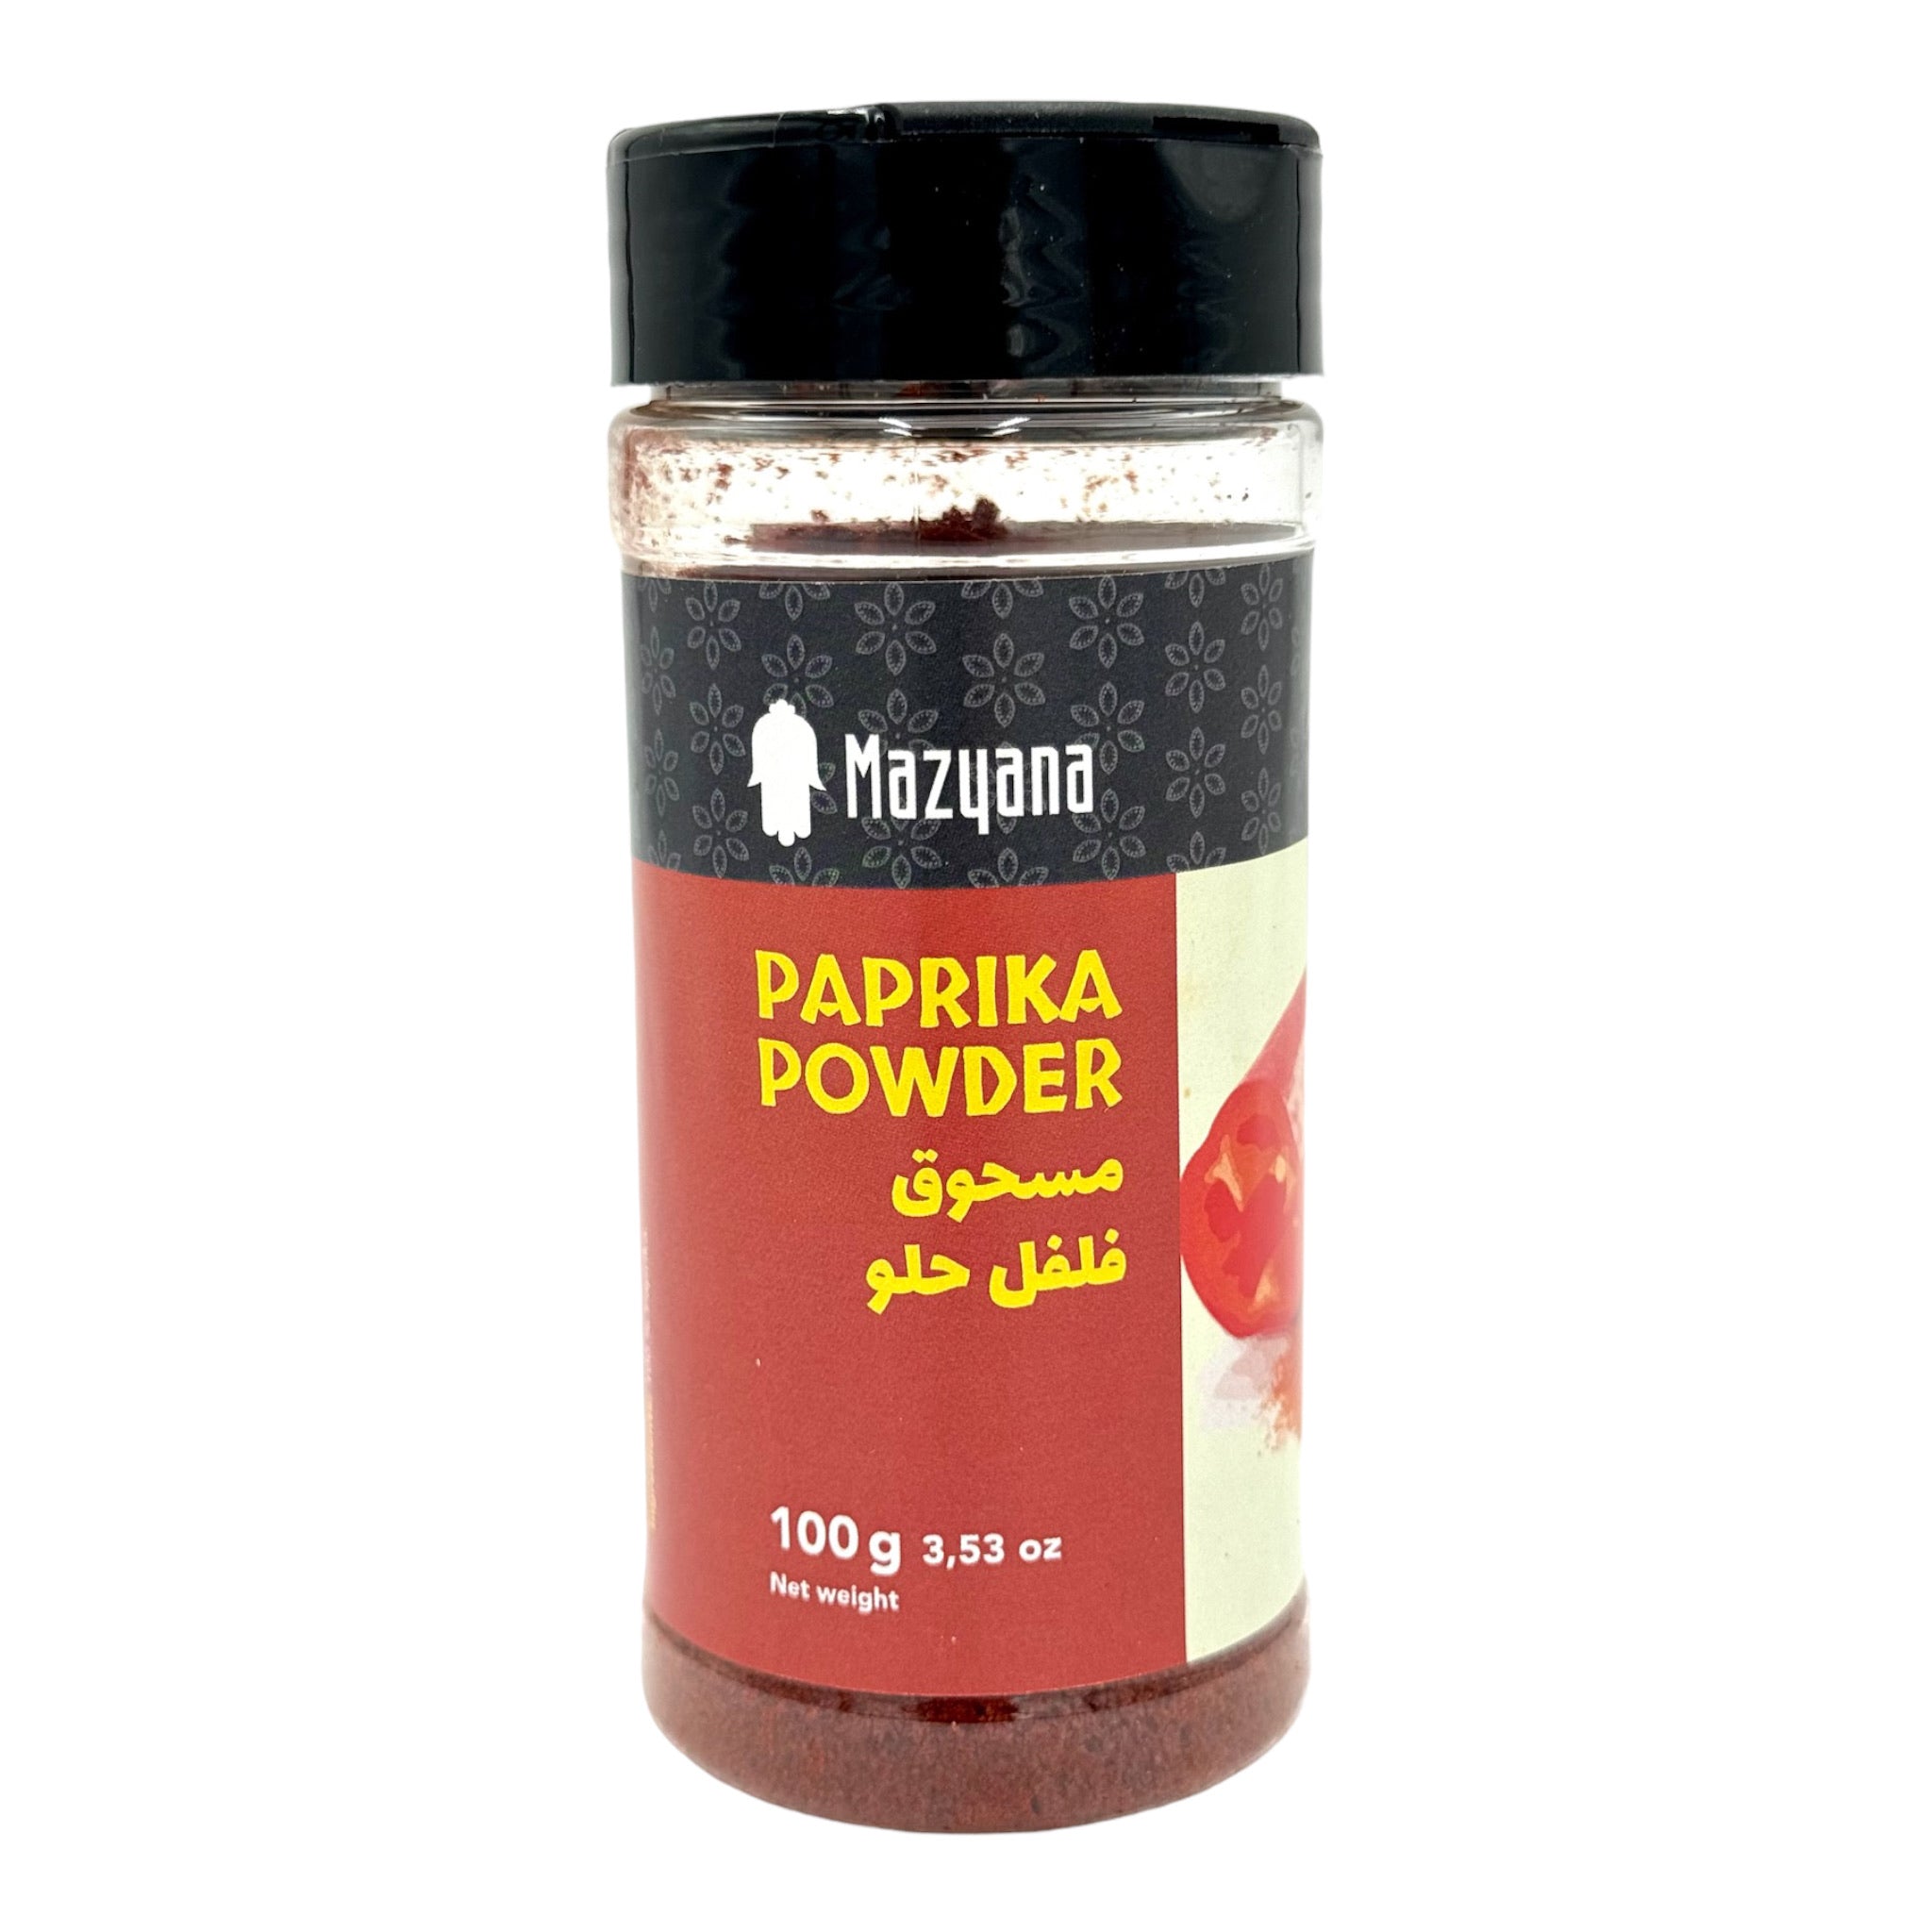 moroccan paprika powder by Mazyana brand